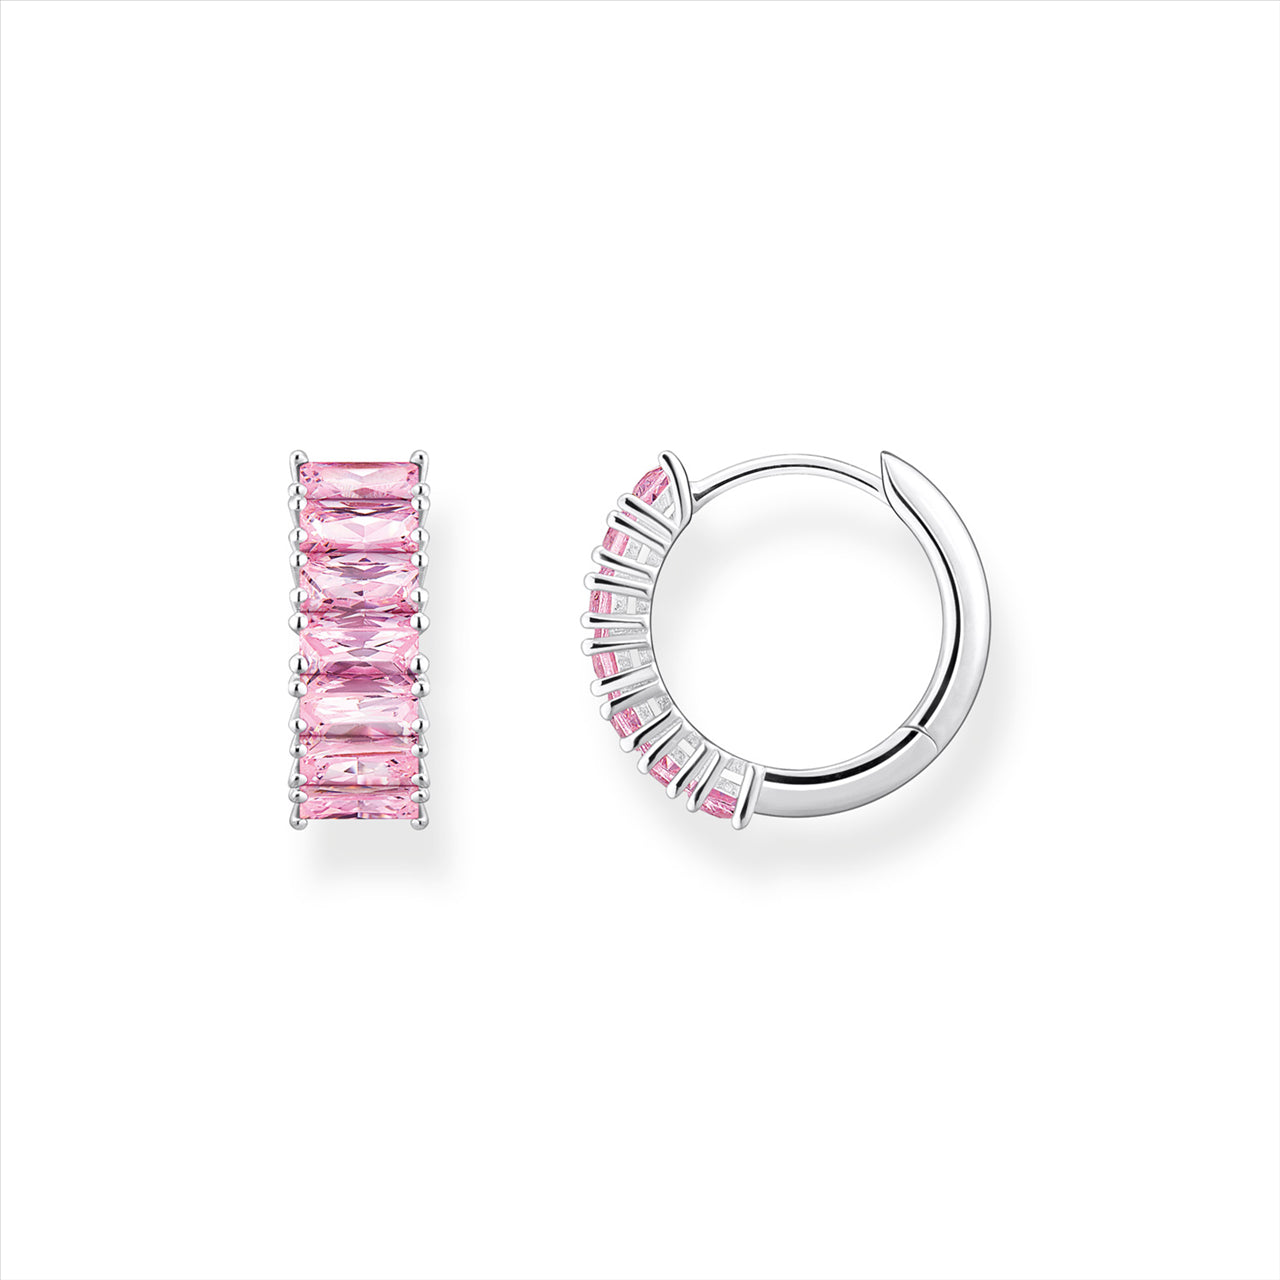 Thomas Sabo Heritage Pink Baugette Huggie Earrings.